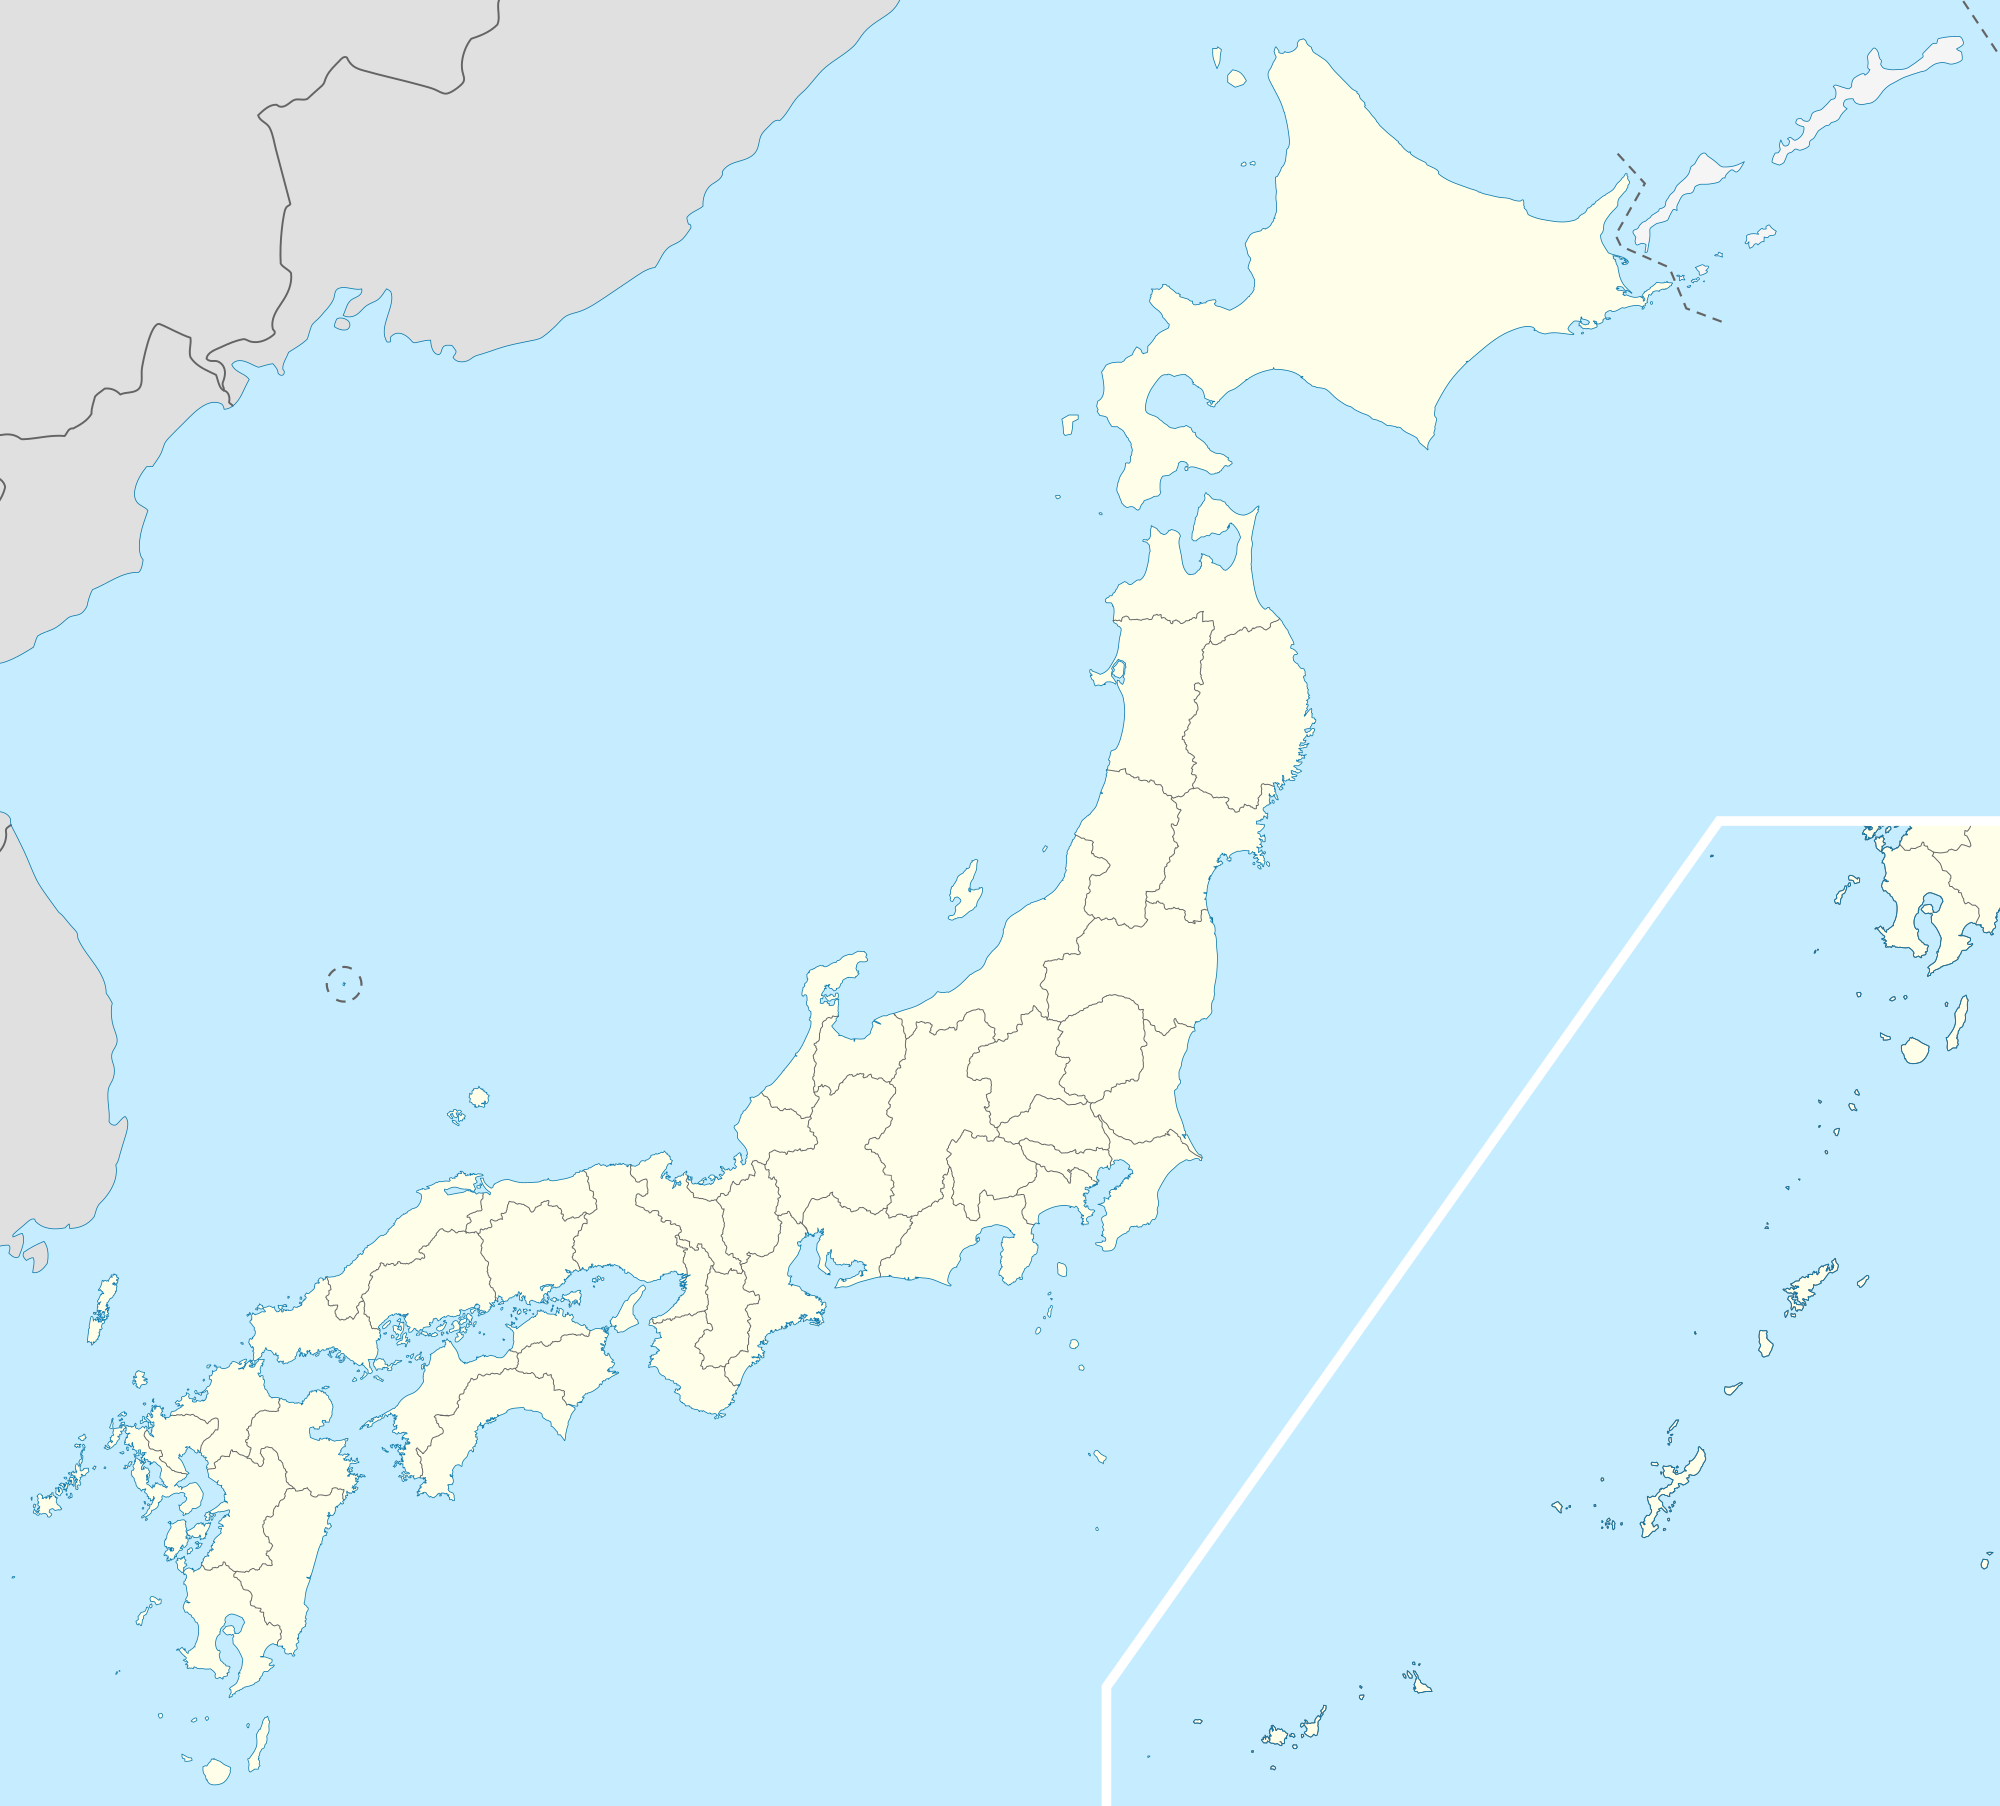 神戸 is located in Japan